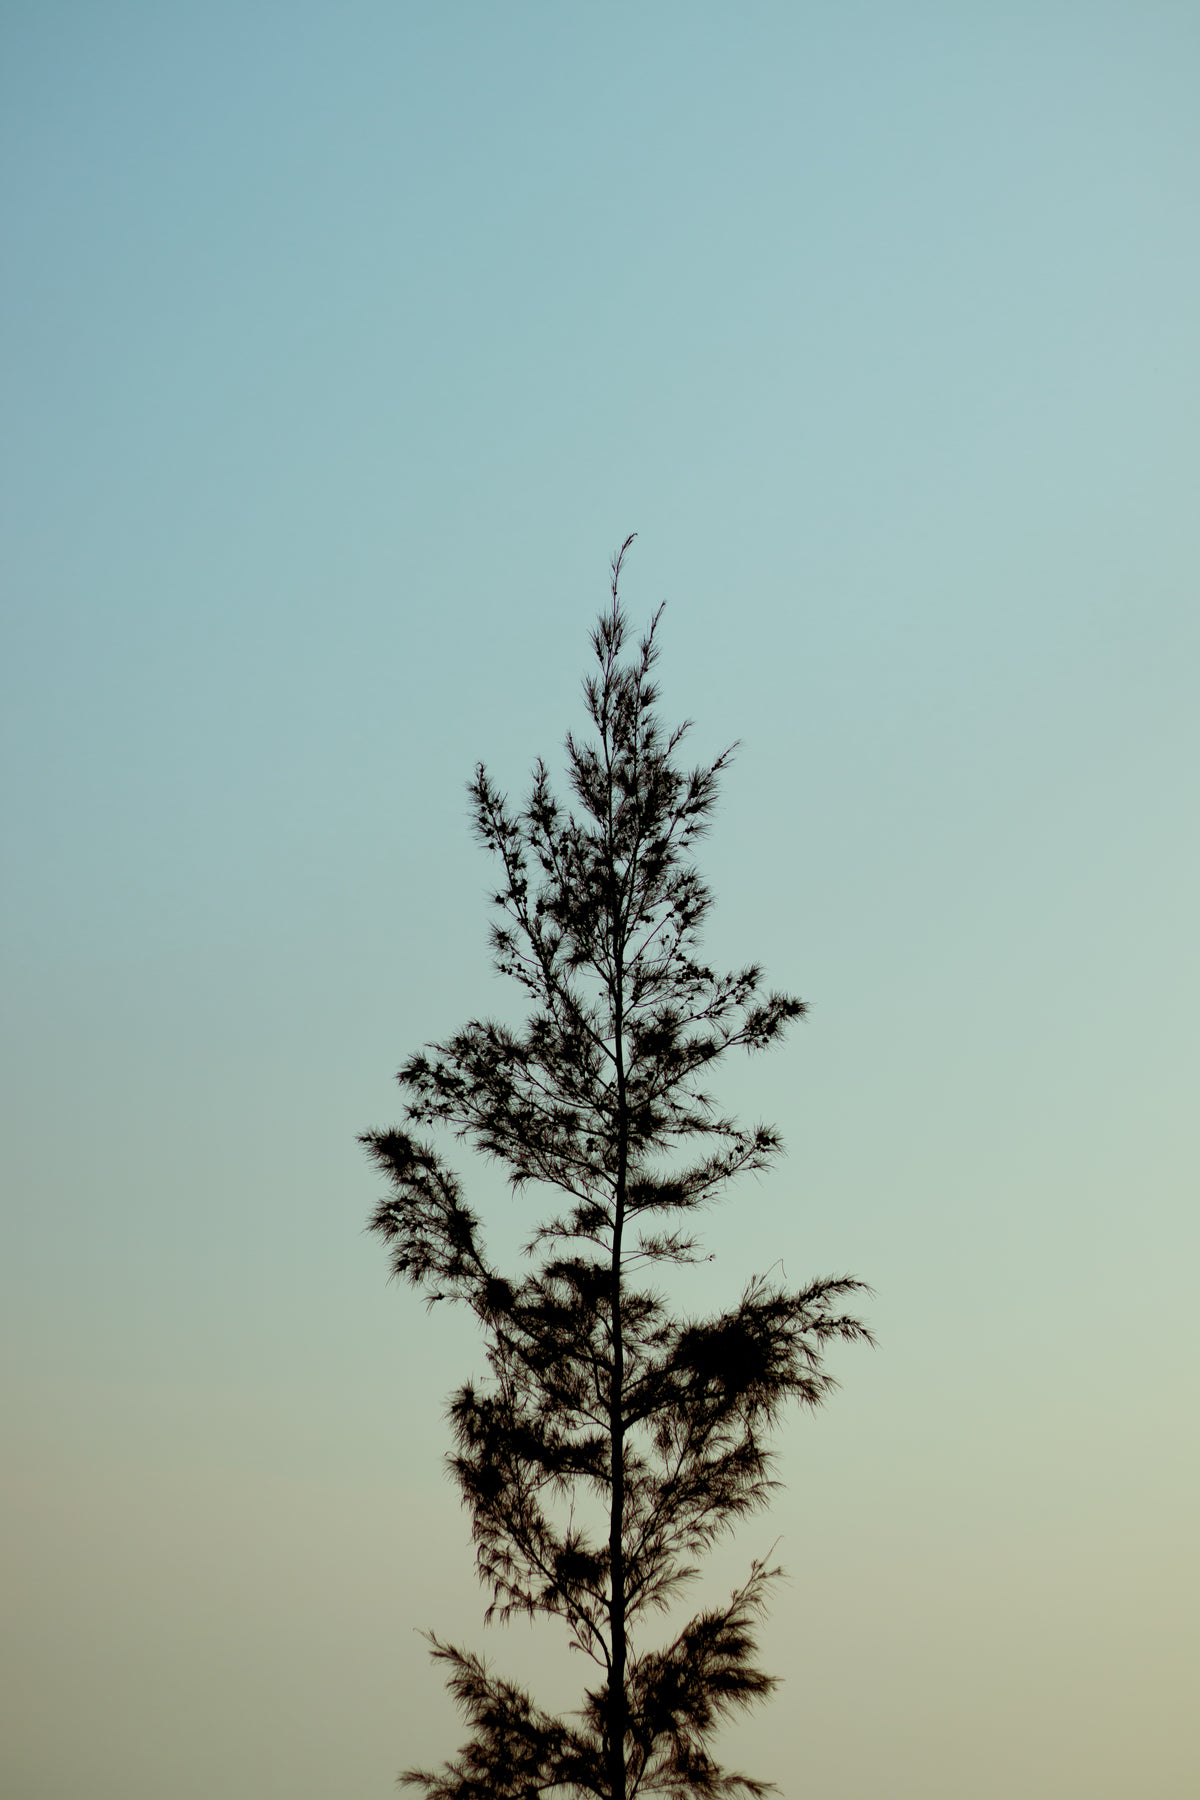 tree reaches tall against a lite blue sky